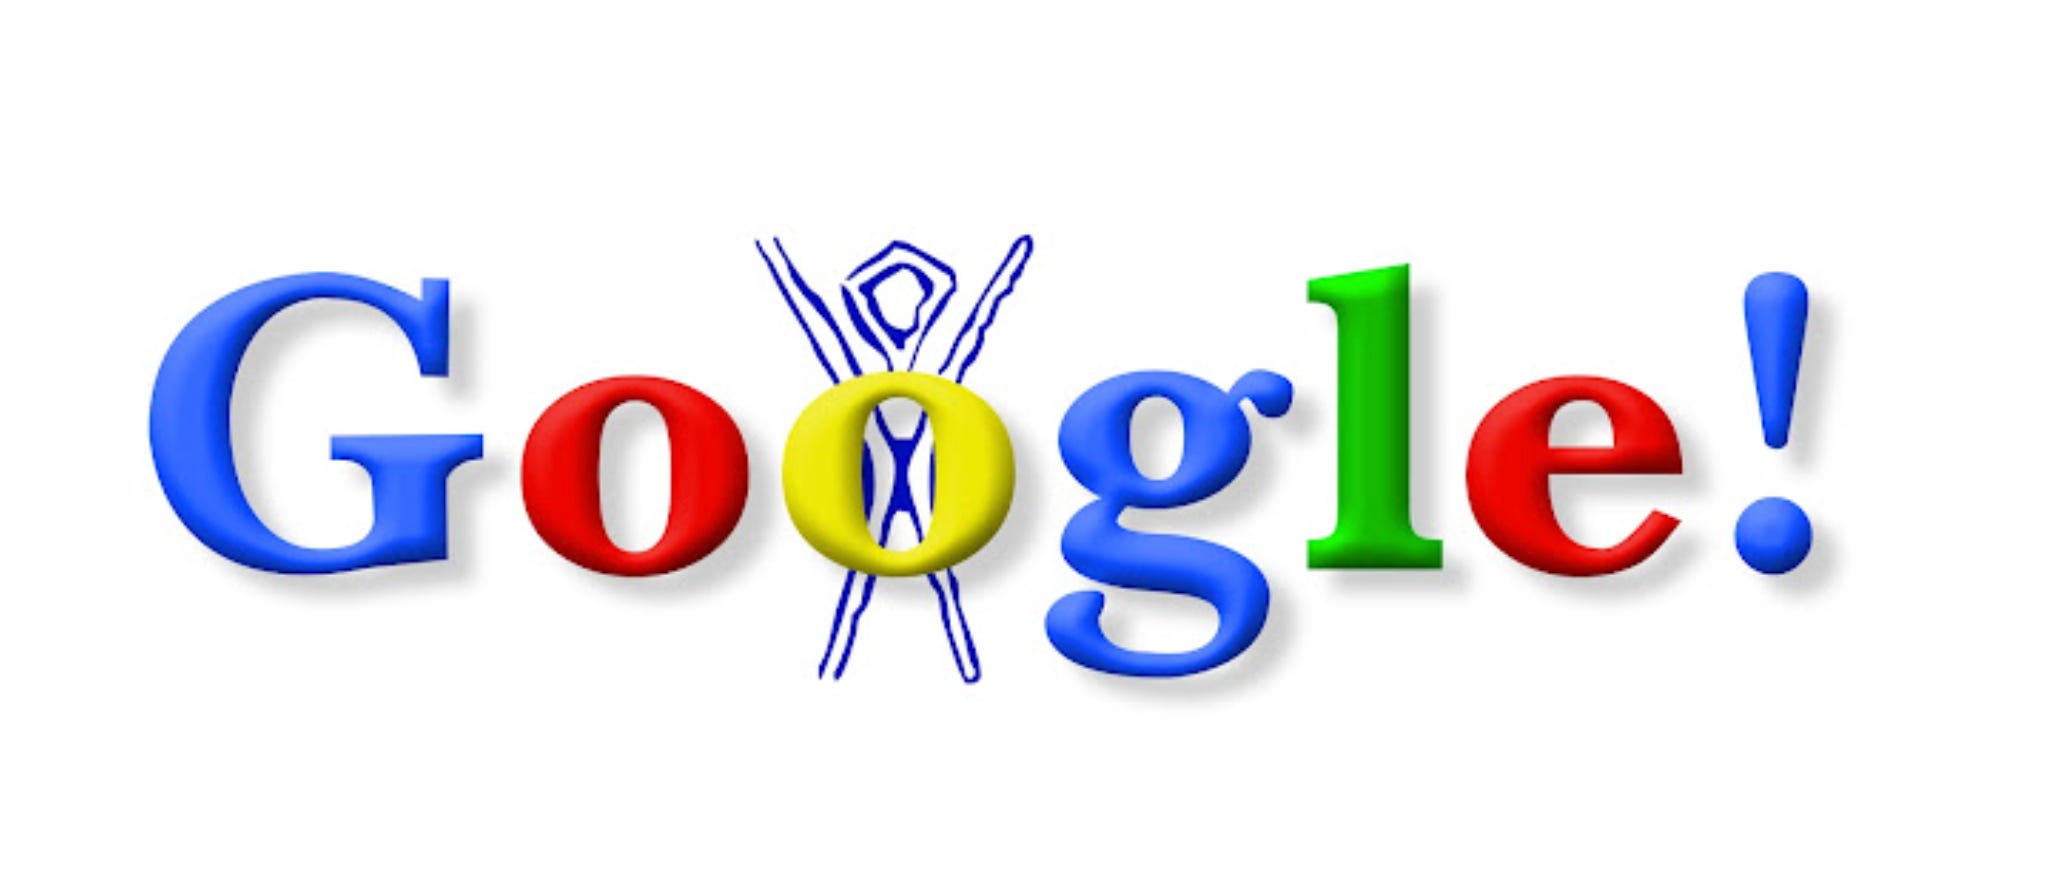 Das allererste Google Doodle zeigte das Google-Logo von 1998 mit der Skizze eines blauen Strichmännchens hinter dem zweiten „o“ zu Ehren des Burning Man-Festivals.